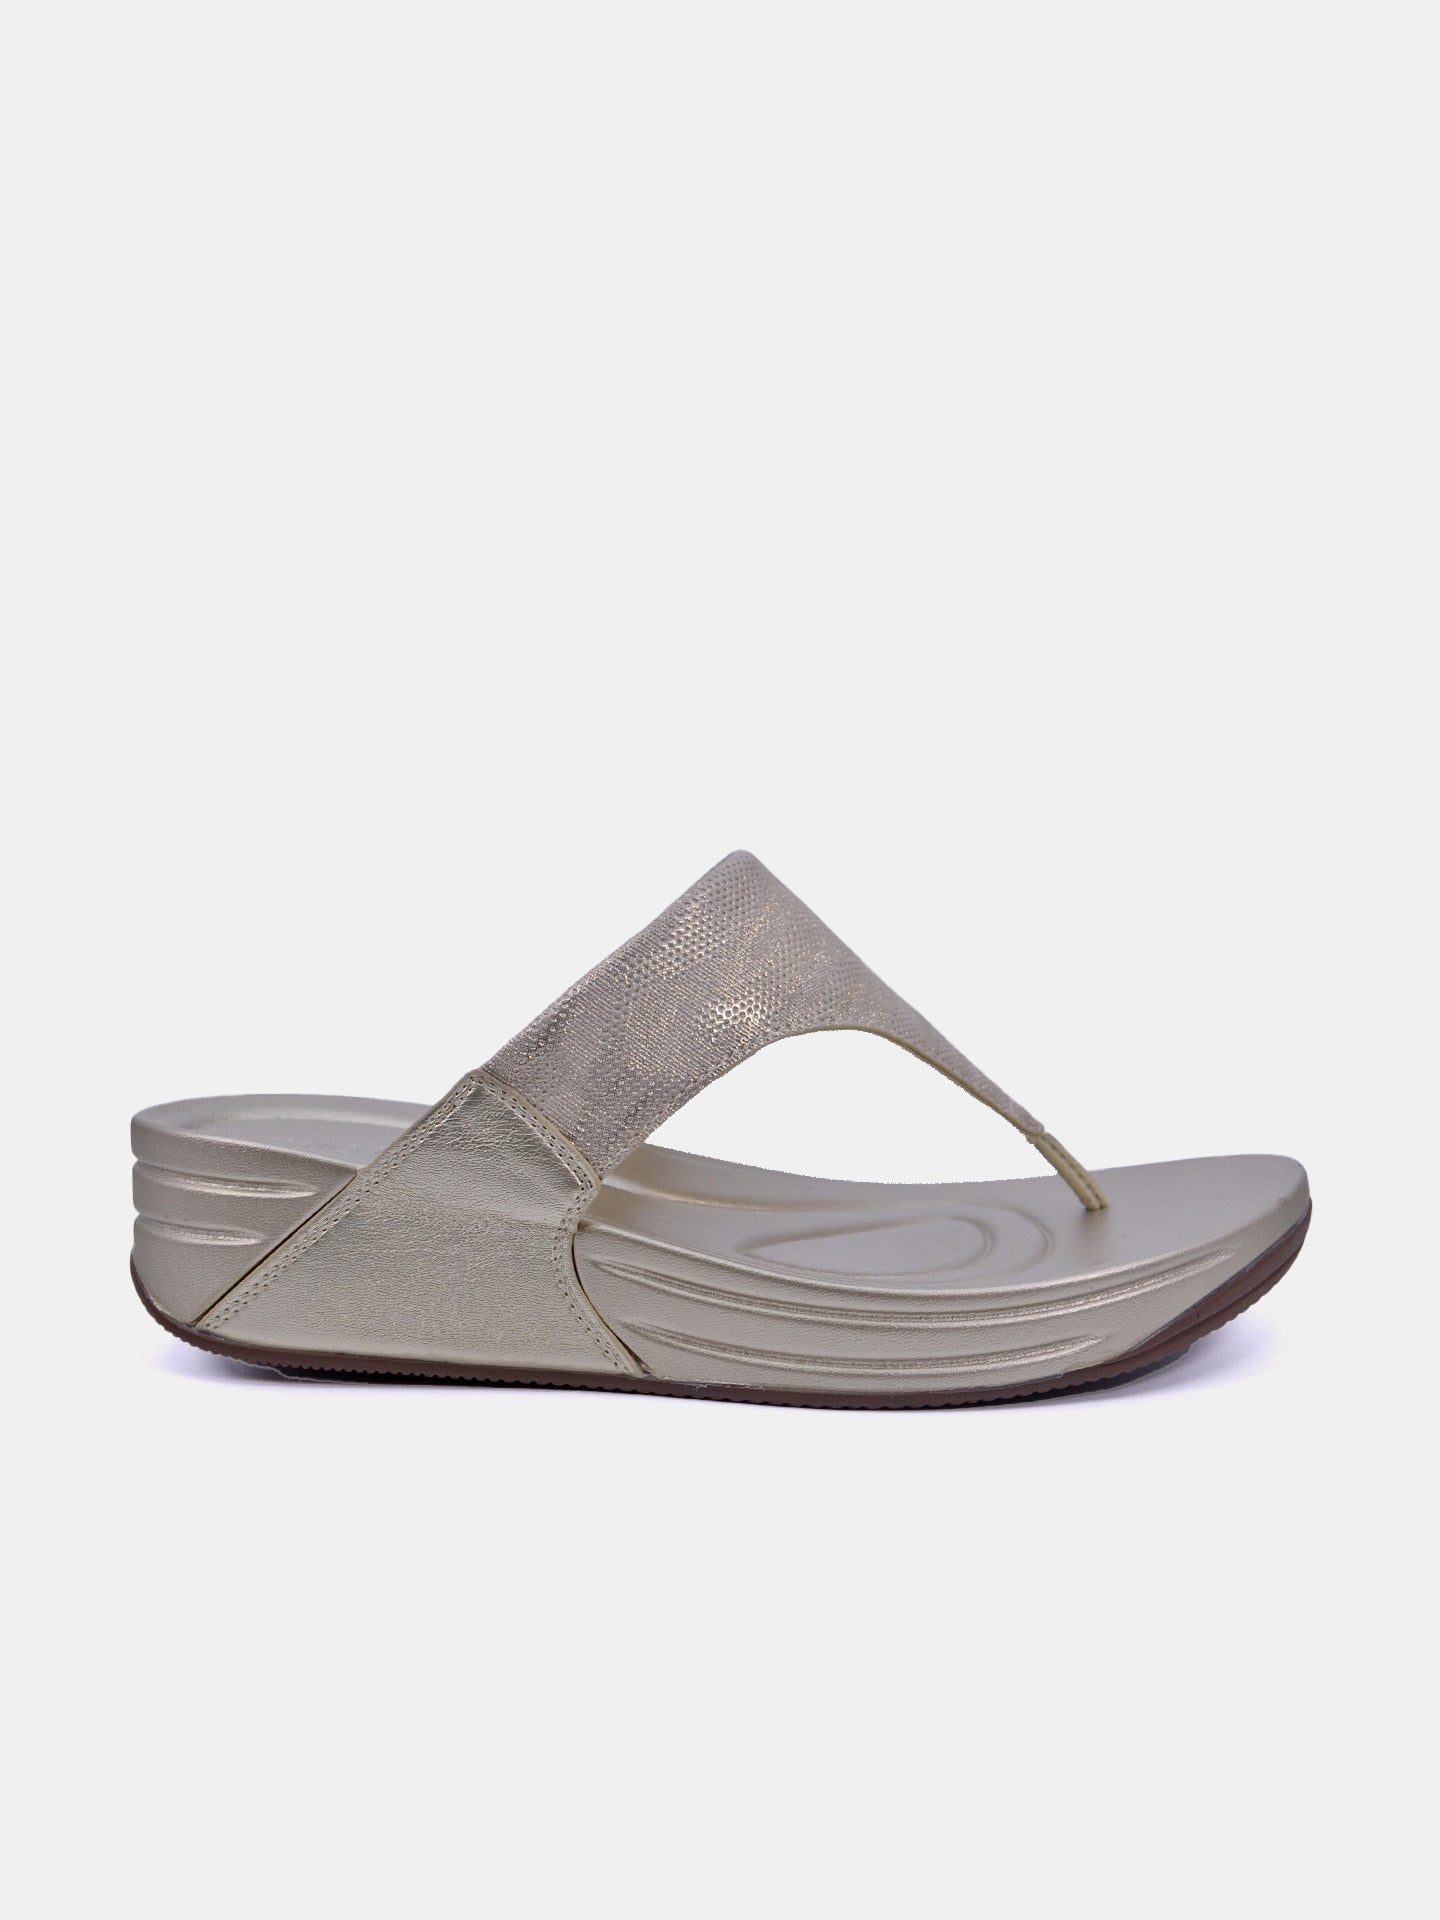 Michelle Morgan 214RJ671 Women's Sandals #color_Gold